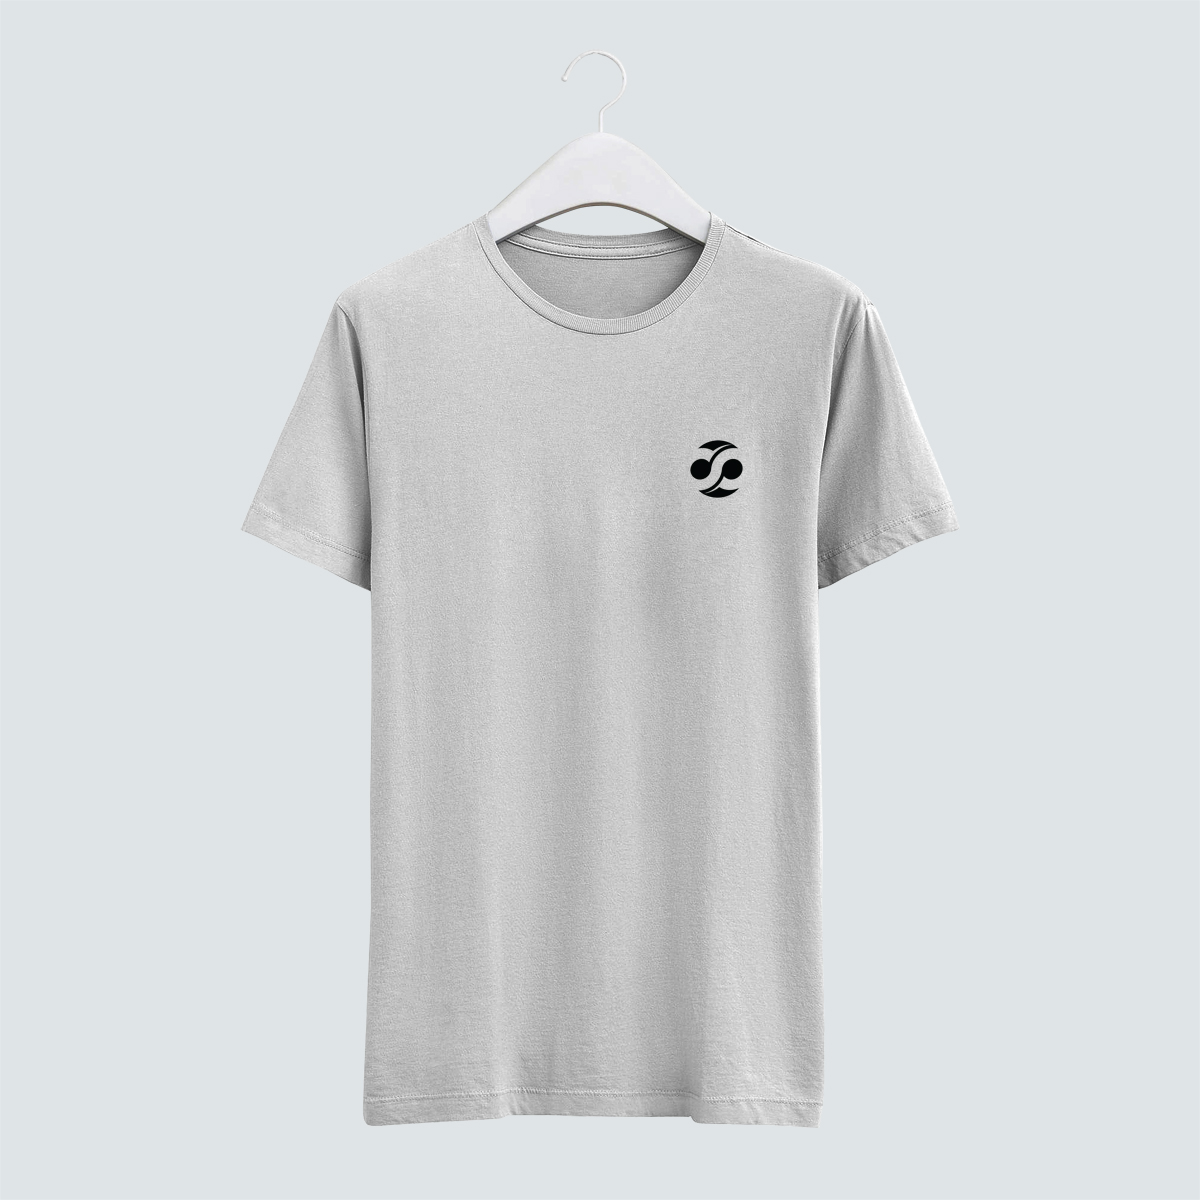 Cre8 Emblem T-Shirt